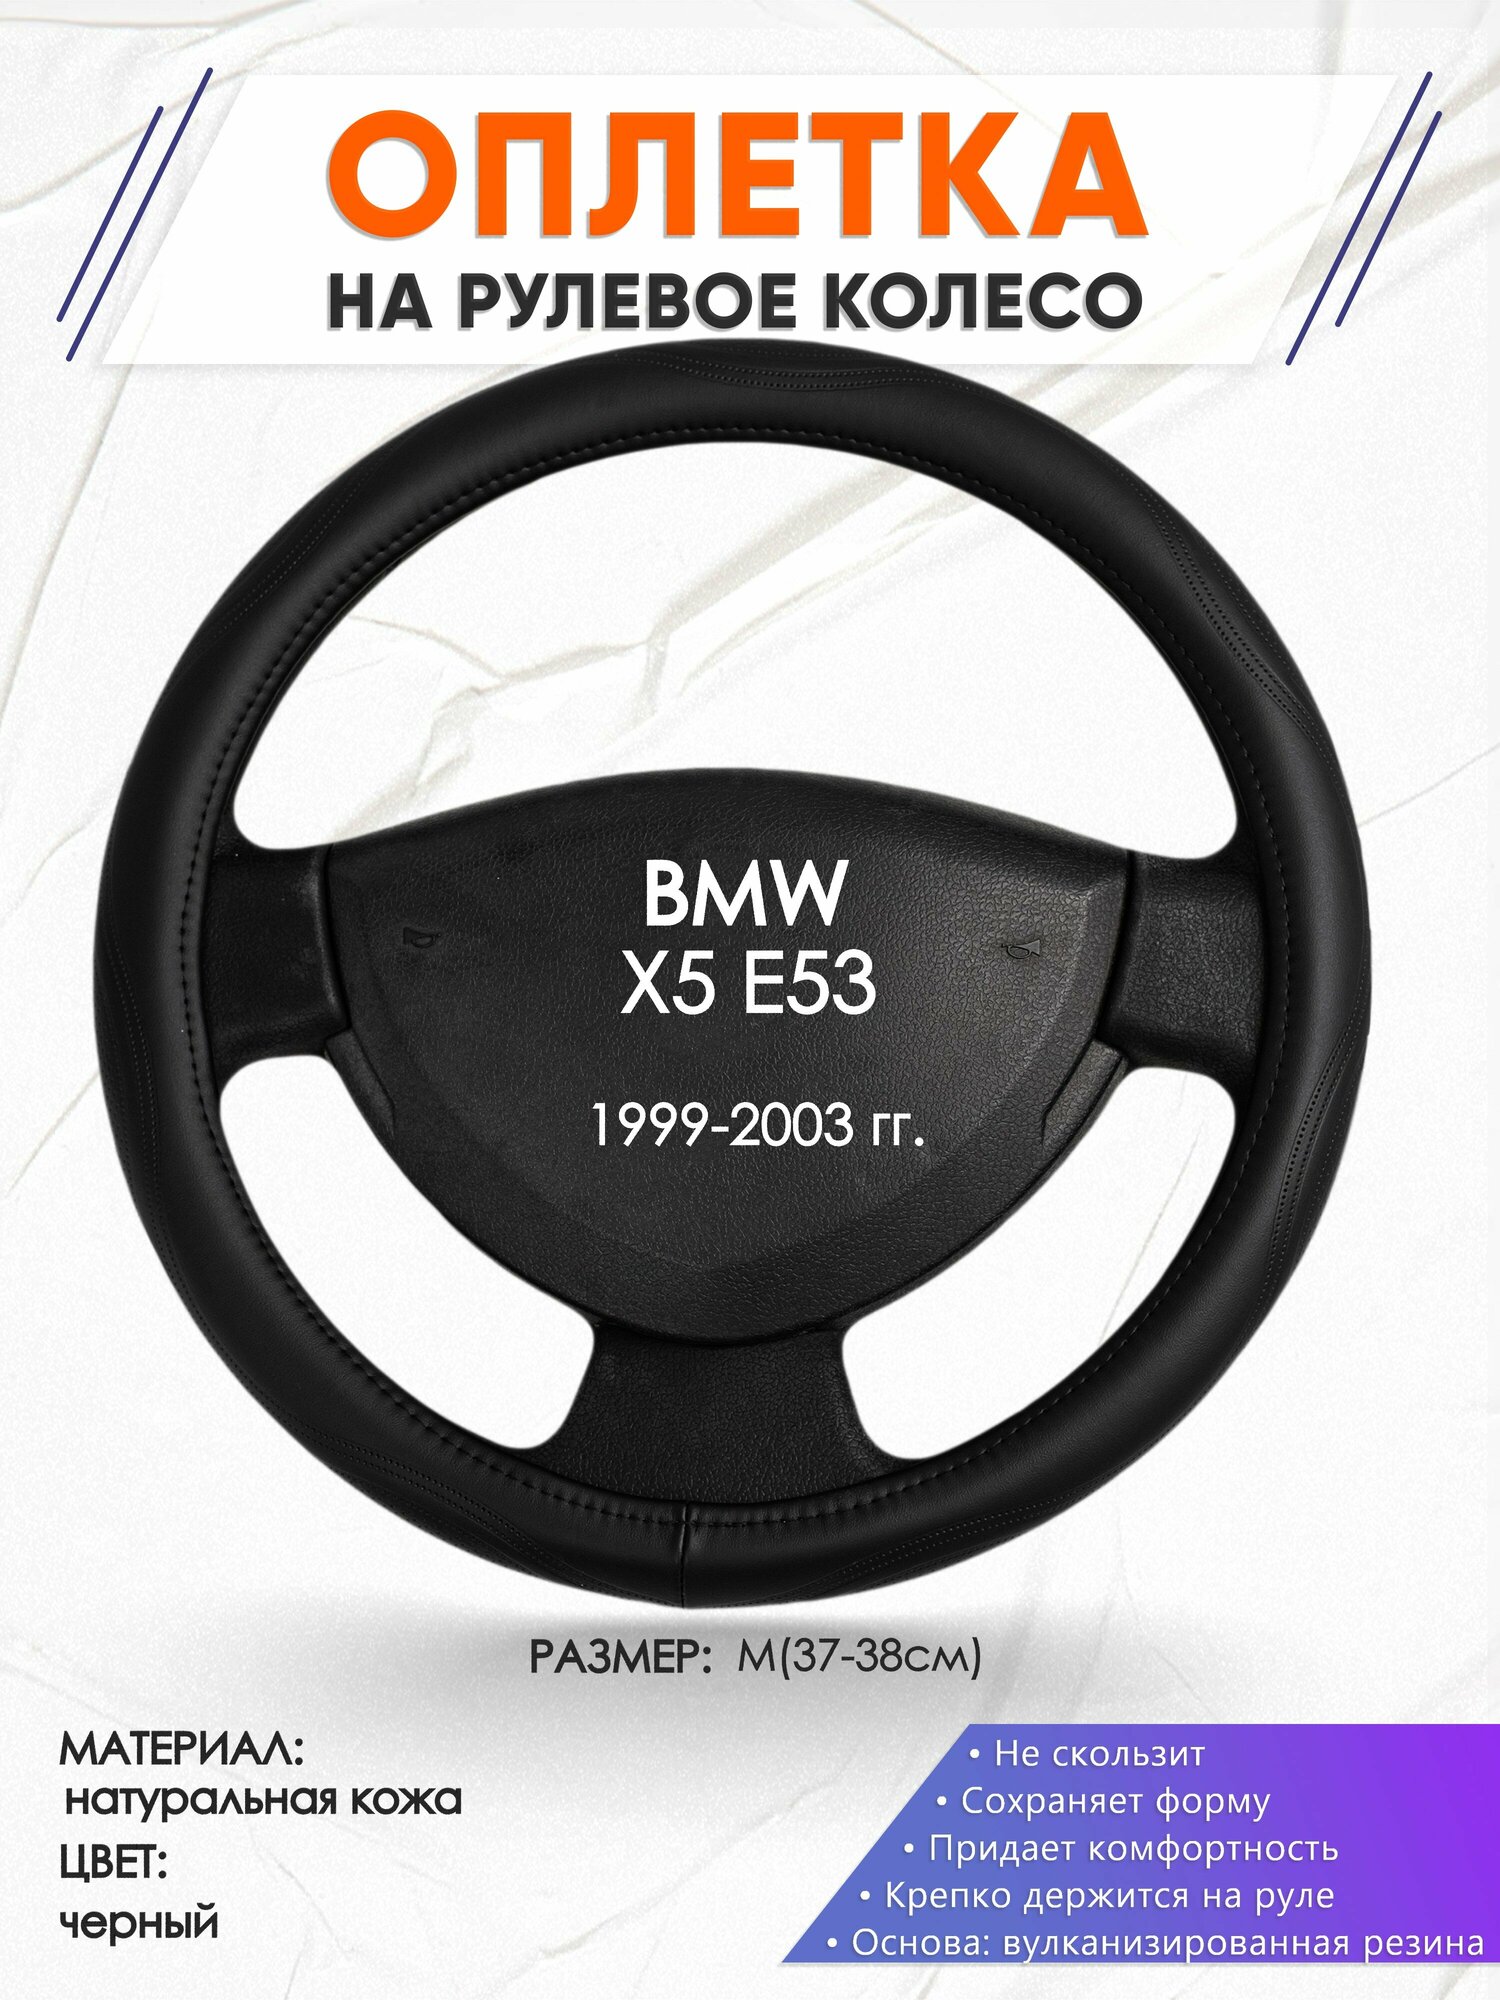 Оплетка наруль для BMW X5 E53(Бмв икс 5 е70) 1999-2003 годов выпуска размер M(37-38см) Натуральная кожа 23